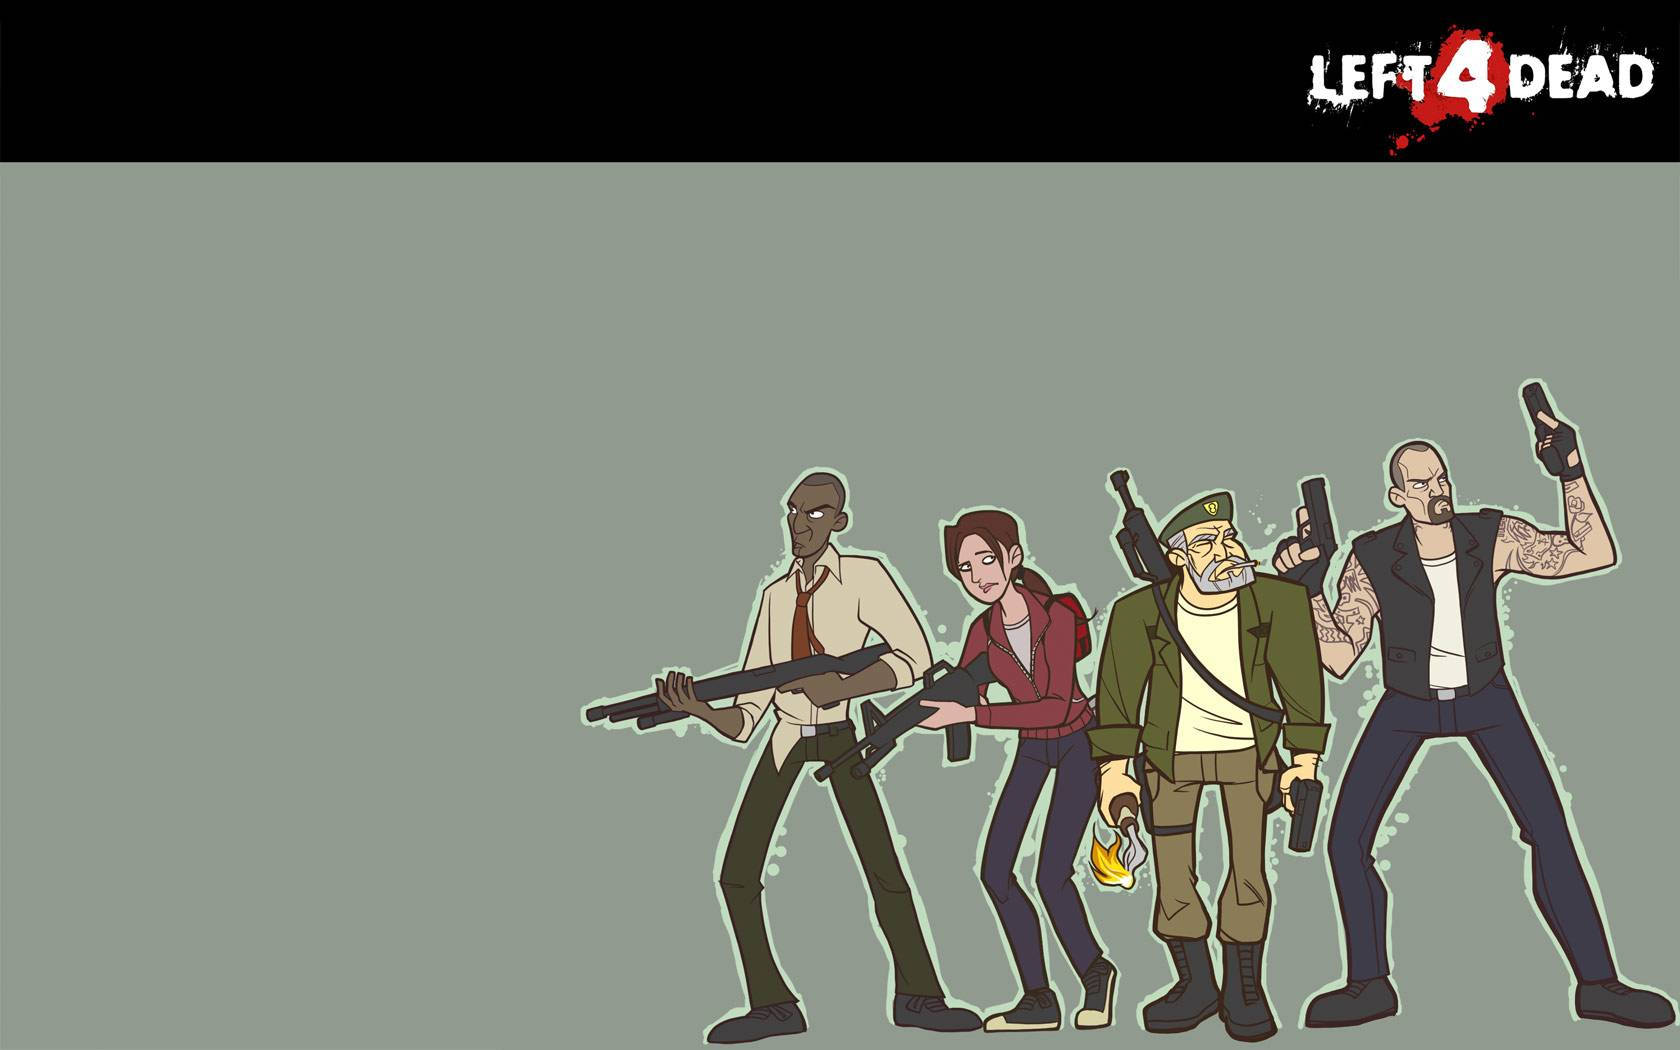 Left 4 Dead Survivor Cartoon Art Wallpaper